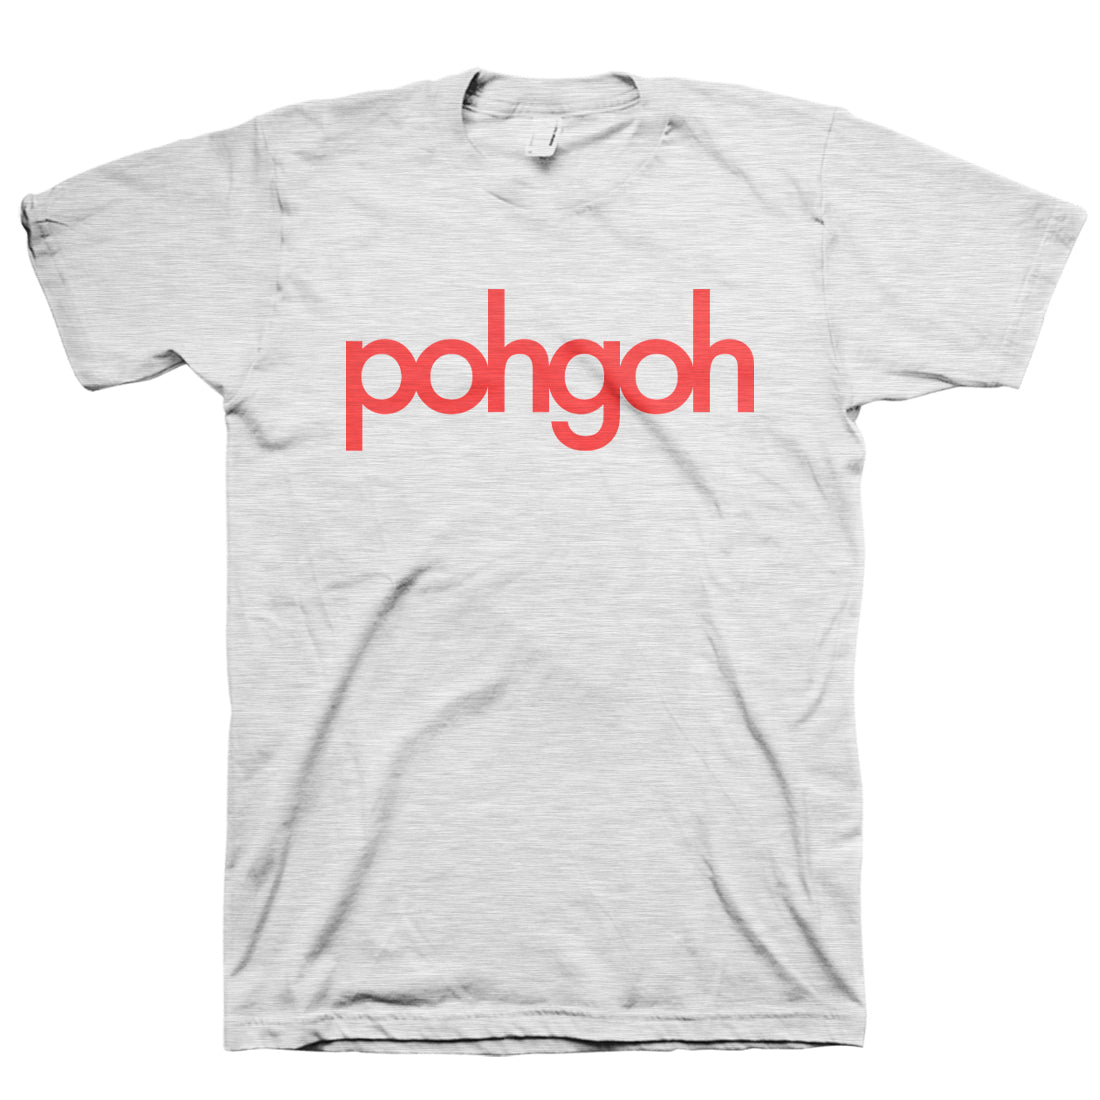 Pohgoh - Lohgoh T-Shirt